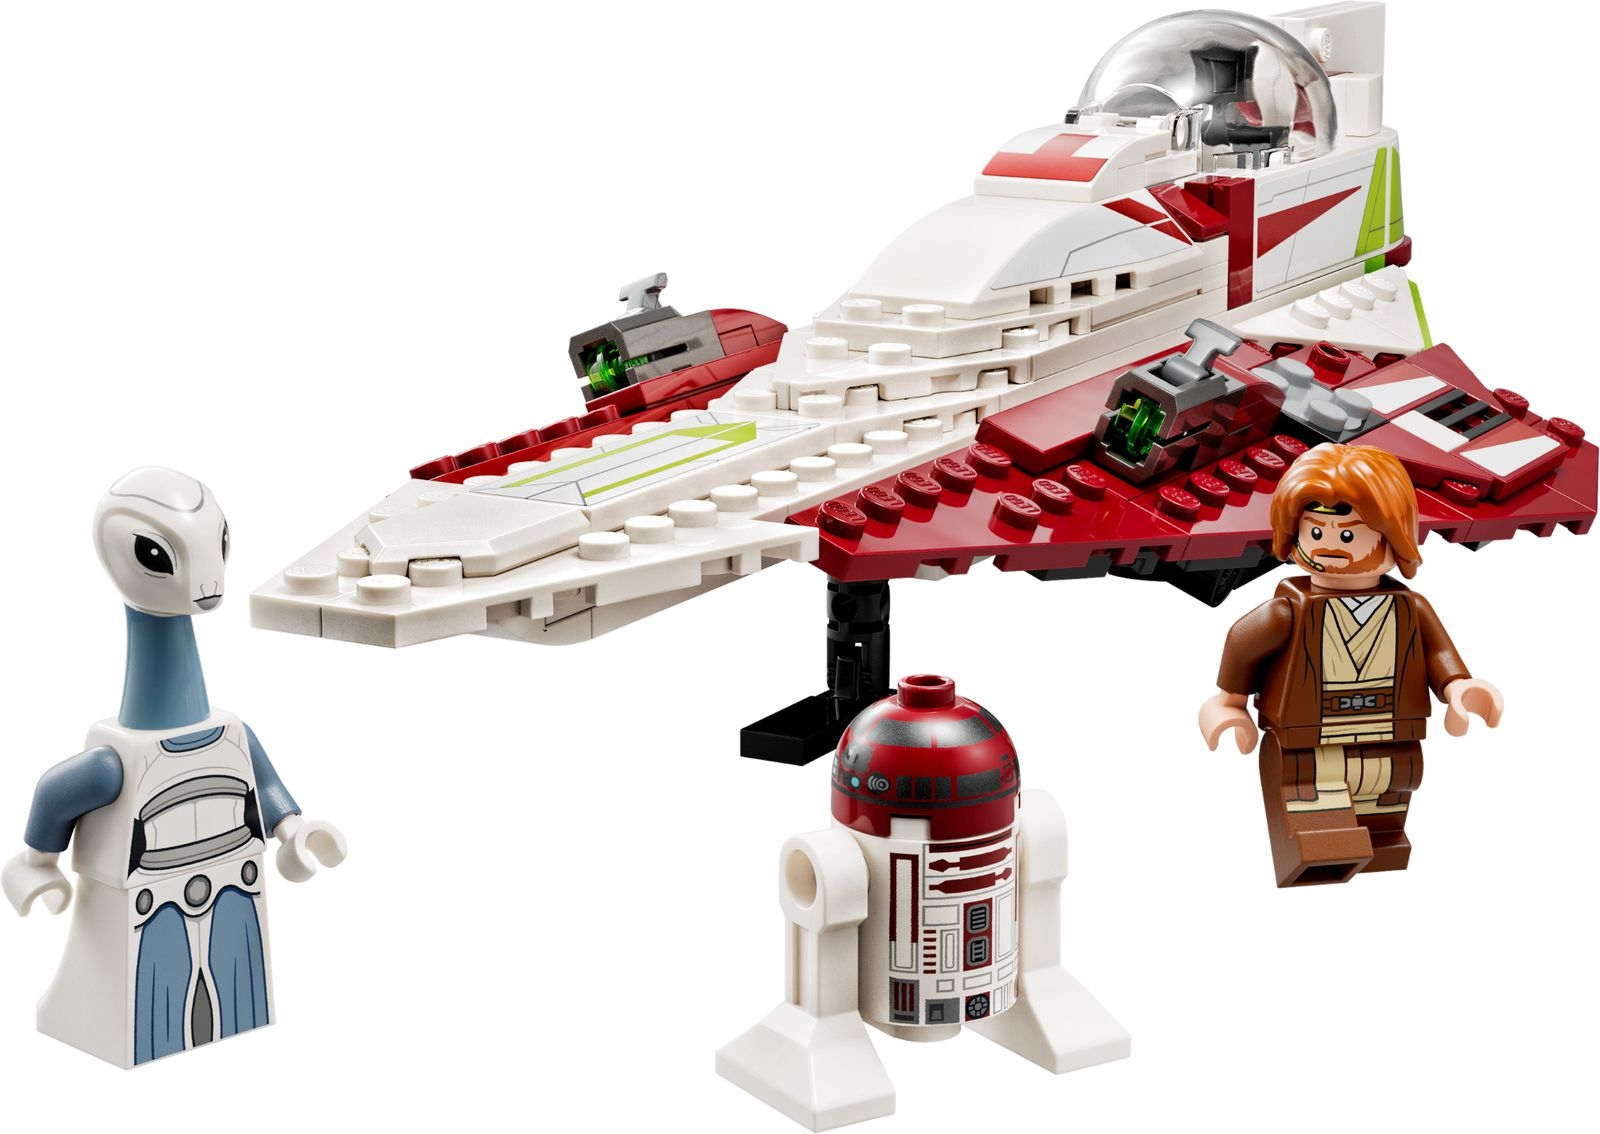 LEGO Star Wars - Myśliwiec Jedi Obi-Wana Kenobiego (75333)